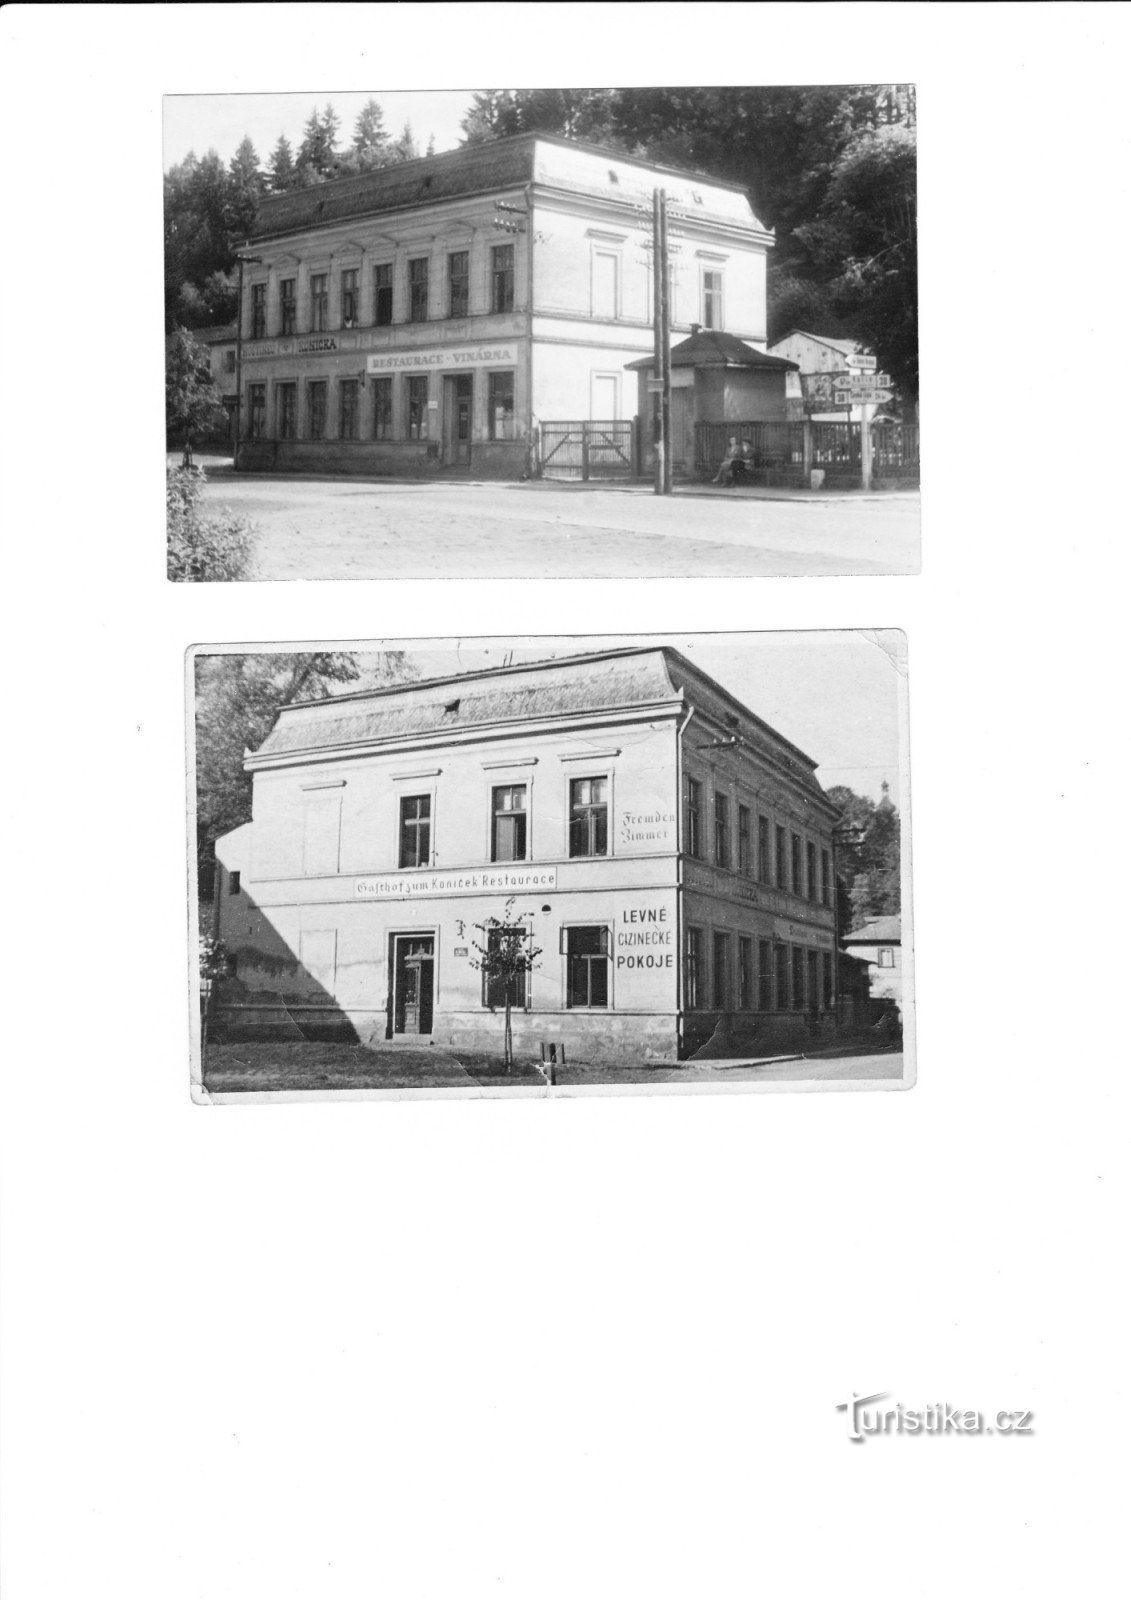 det originale hotel Koníček - ejendom af hr. Šenekls bedstefar